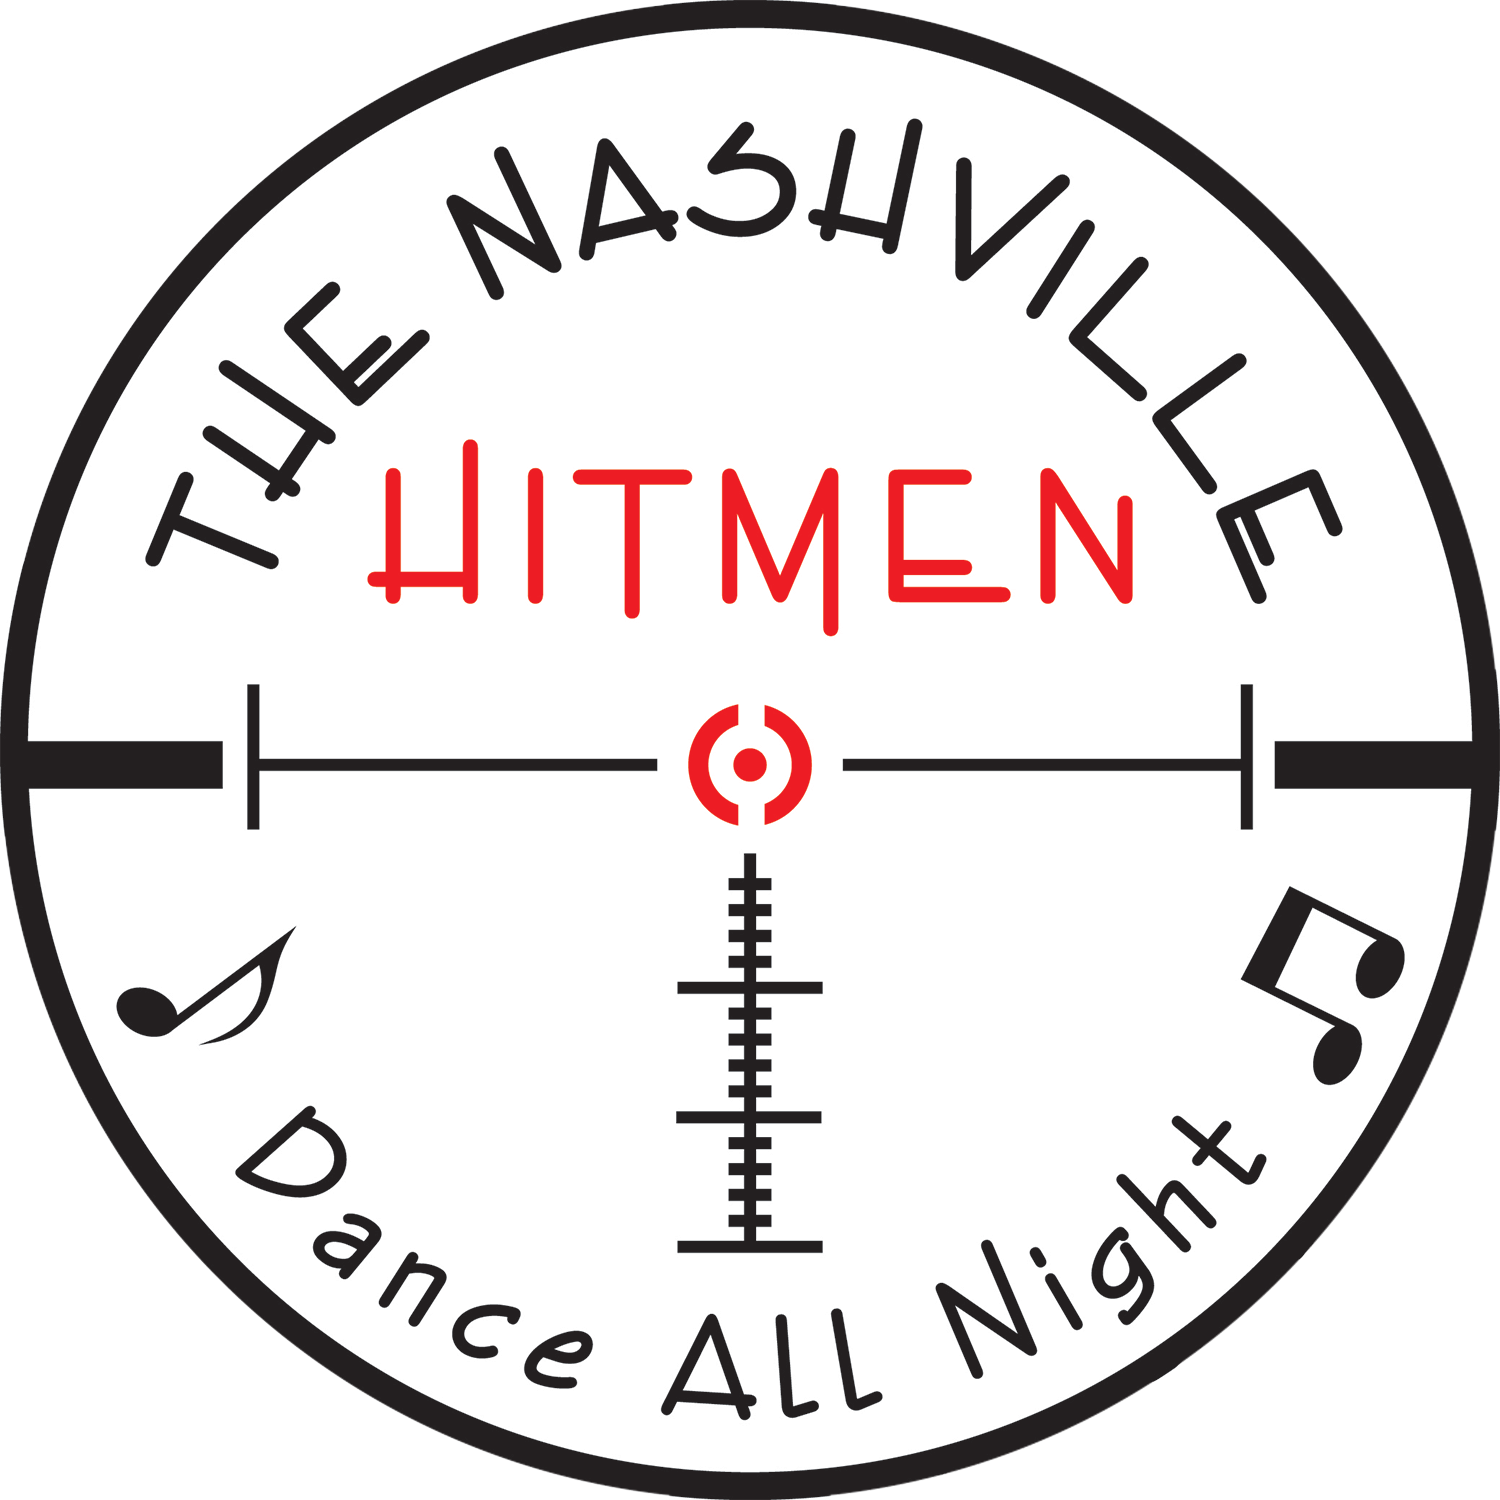 The Nashville Hitmen